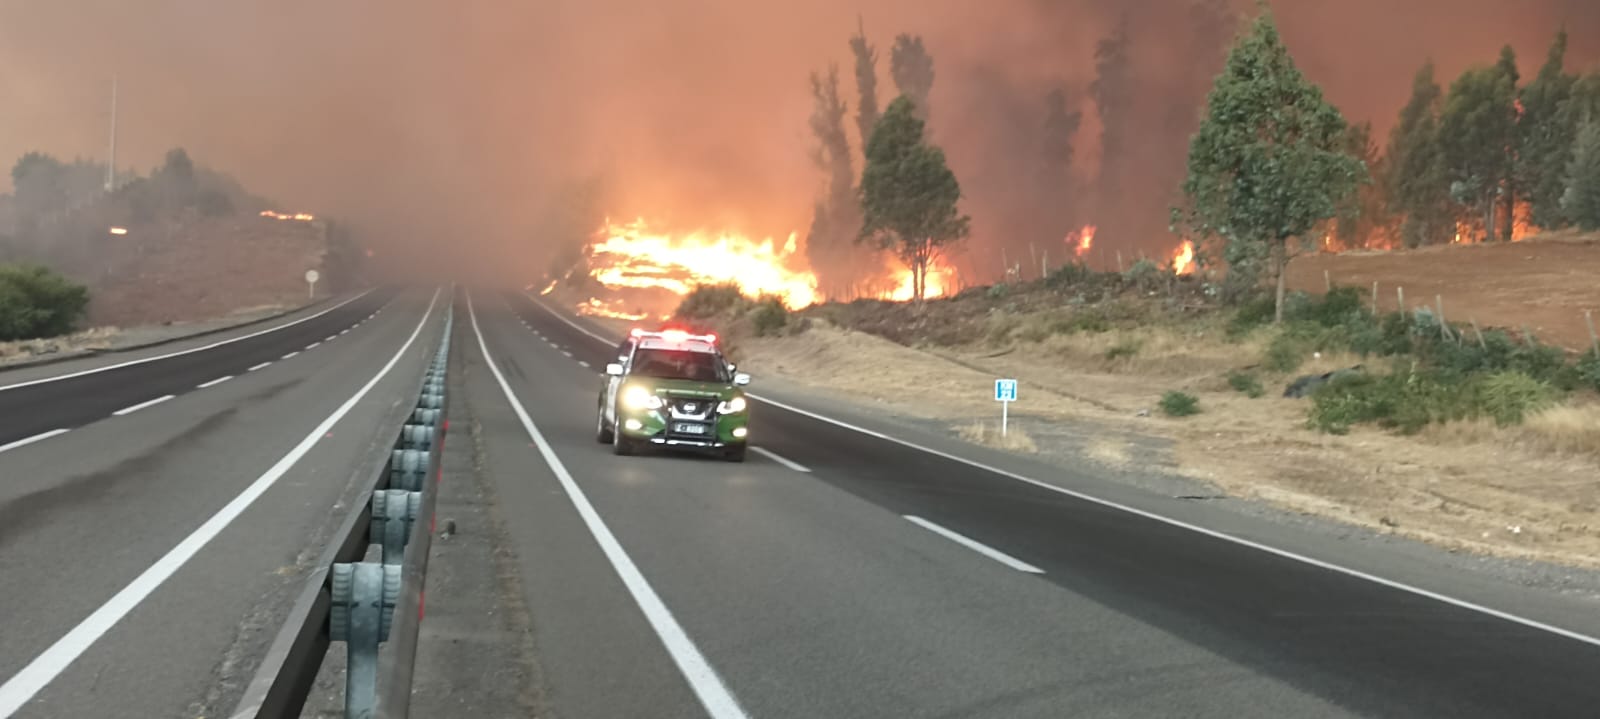 Región de Ñuble en emergencia por incendios forestales que afectan Coelemu, Quillón y Quirihue